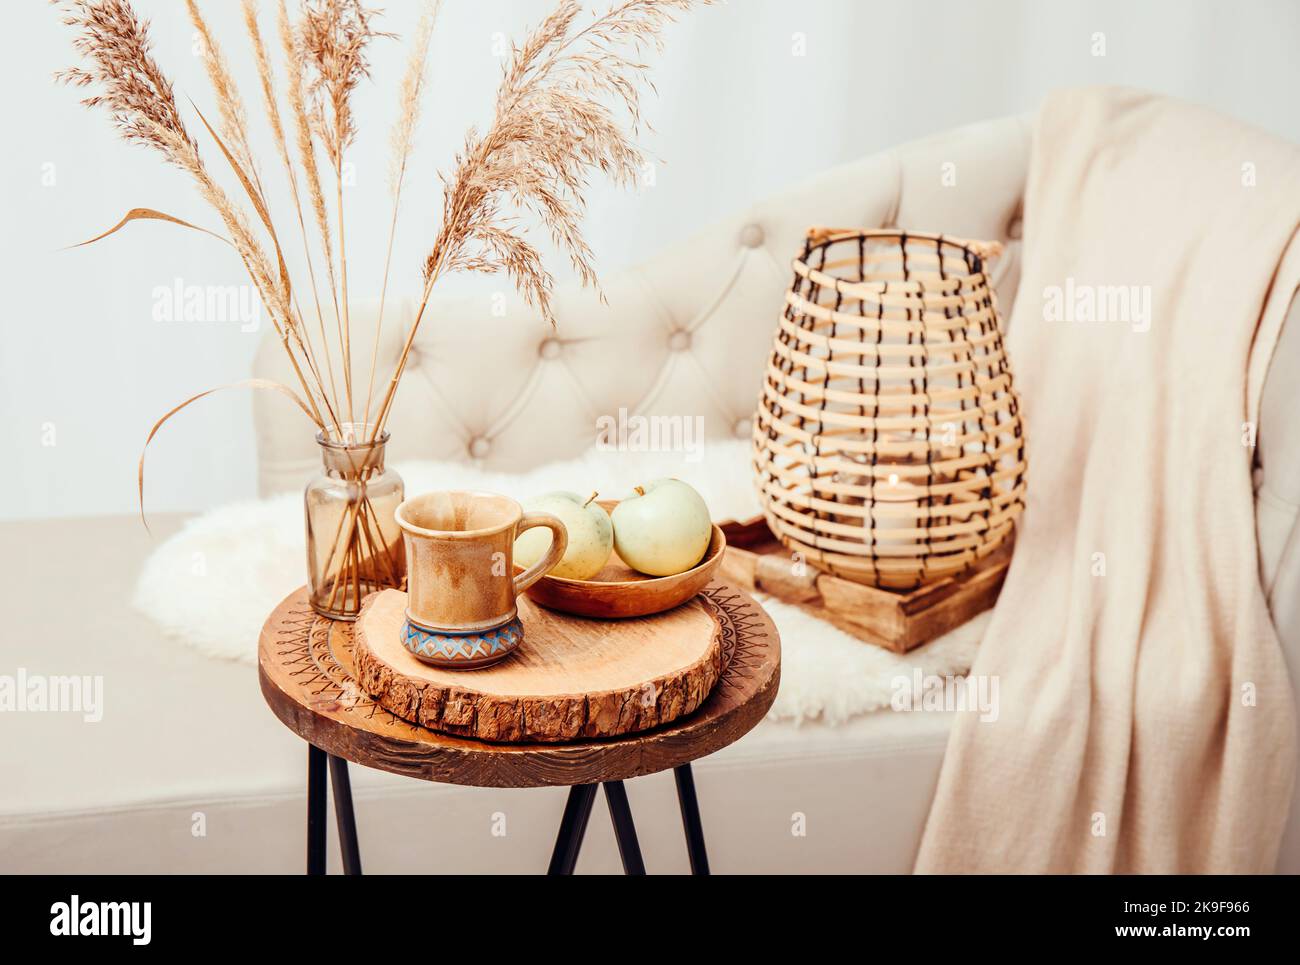 Cozycore oder cottagecore Konzept, warm weich braun beige Interior Design-Objekte. Kuscheliges Wollkaro auf dem Sofa, Kerzenbrenner in Holzlaterne, Teetasse. Stockfoto